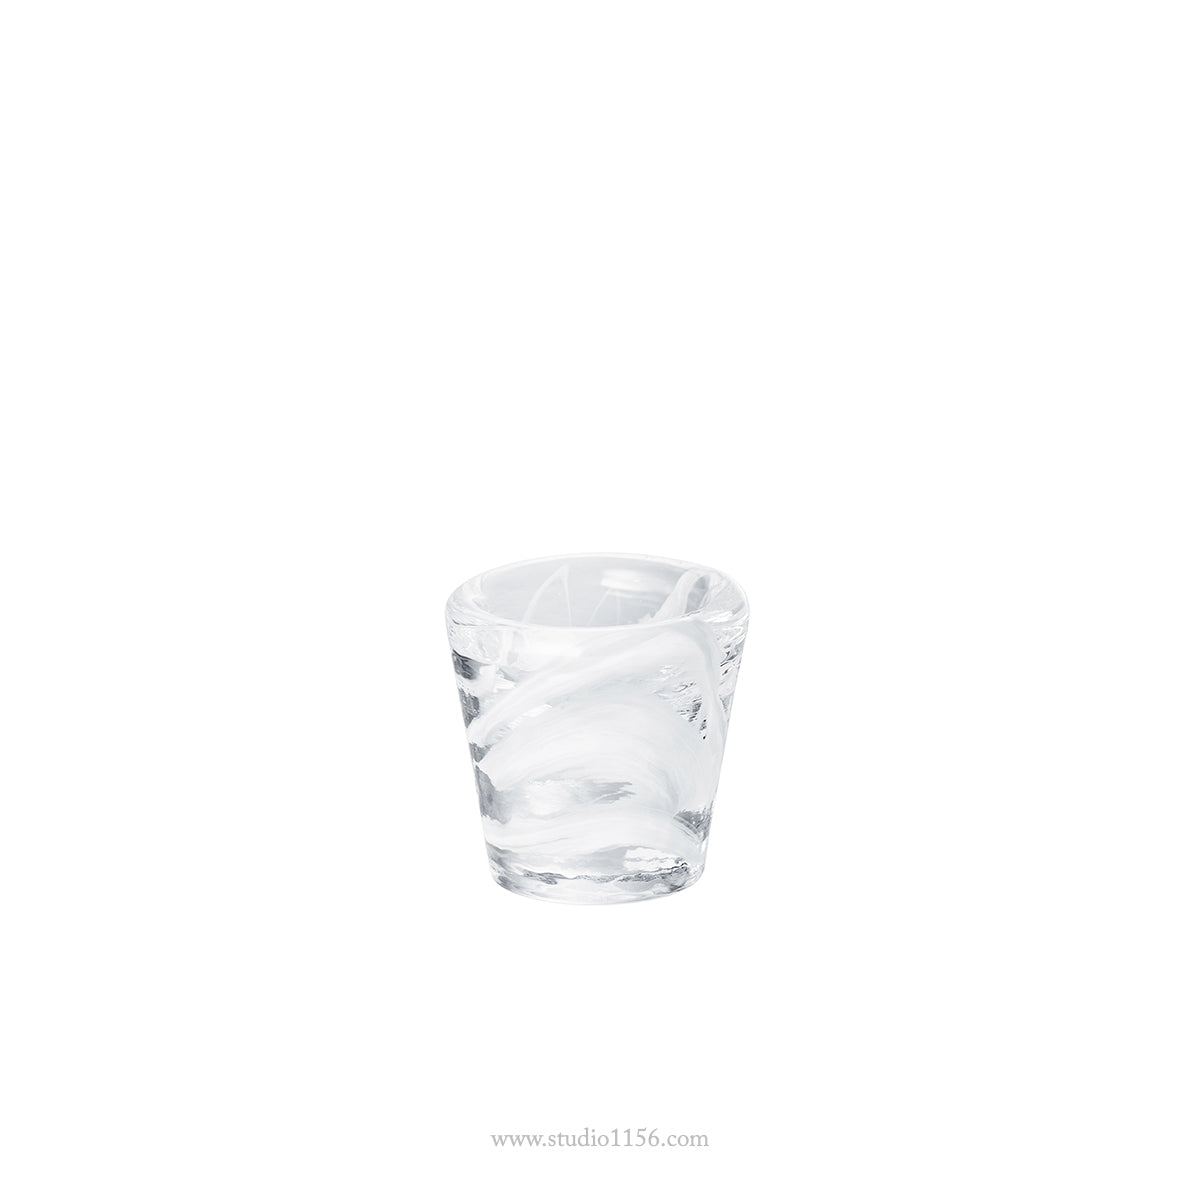 ガラス食器 トーチアミューズ 5cm ホワイト Yoshinuma-glass Studio1156